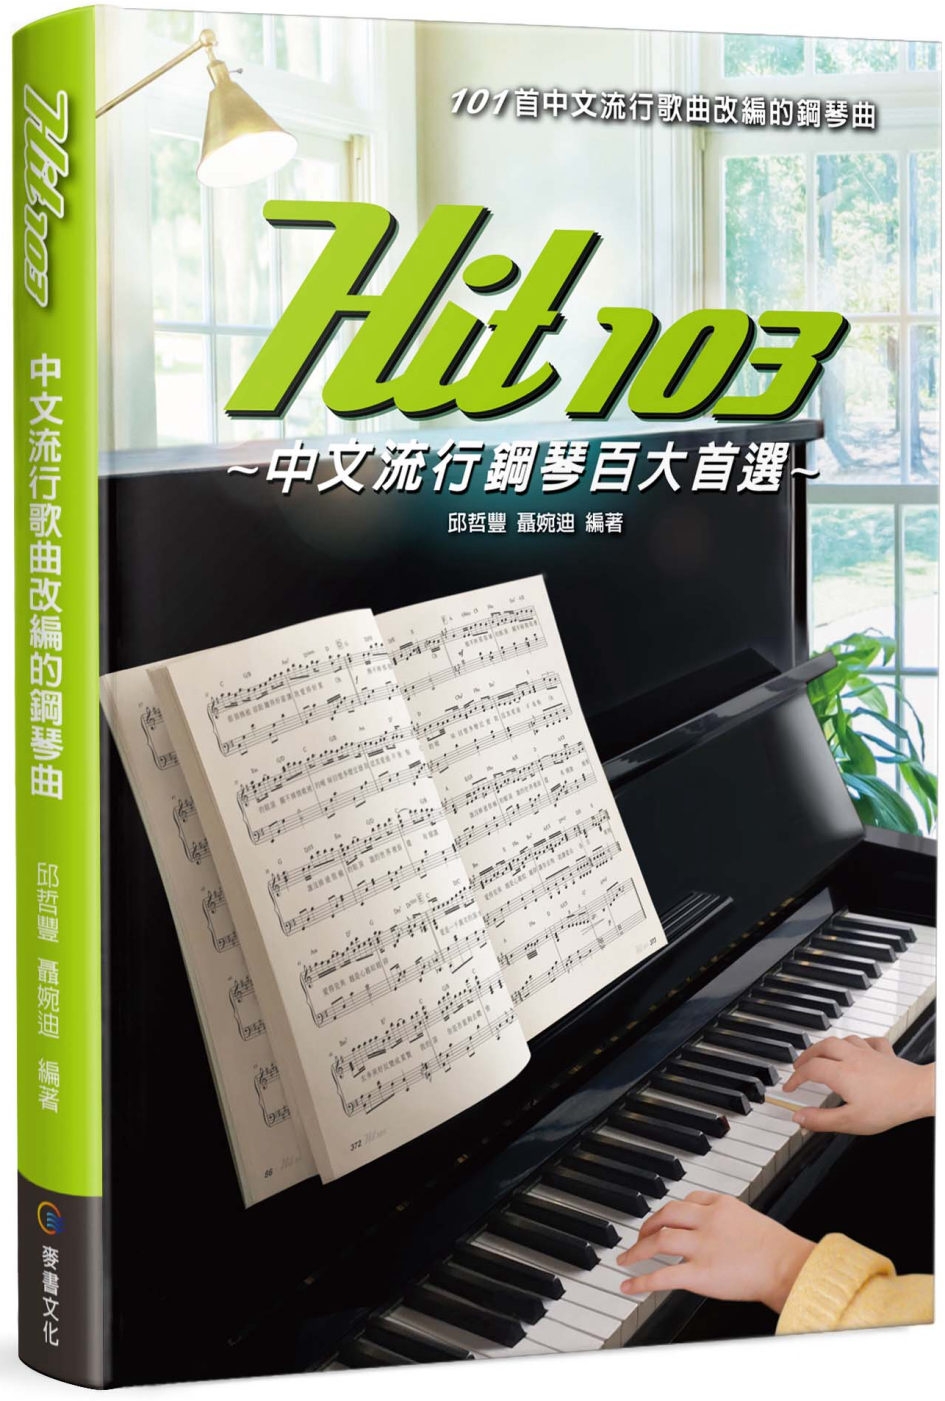 Hit103中文流行鋼琴百大首選